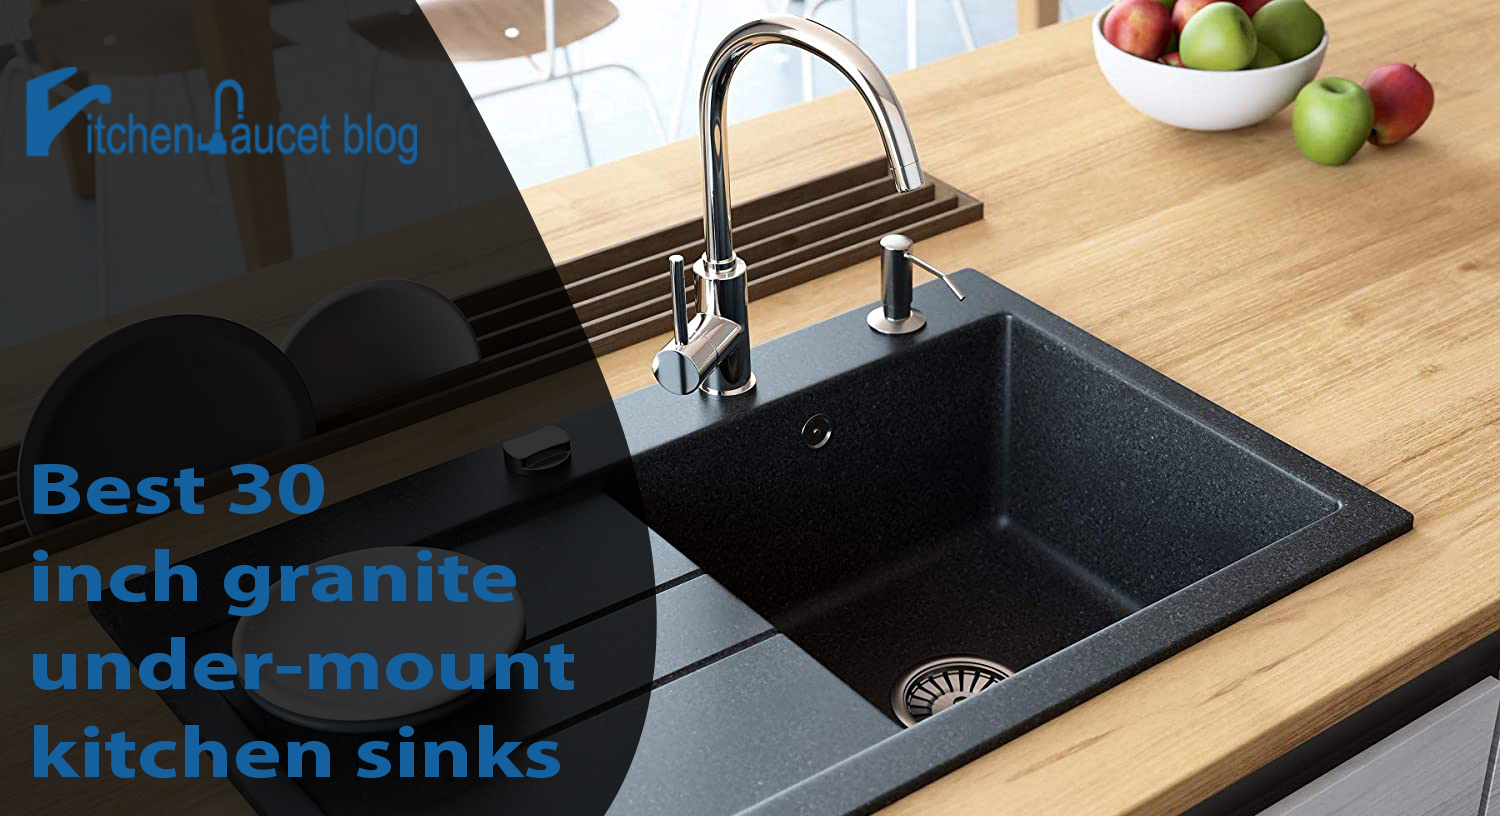 Best 30 inch granite under-mount kitchen sinks